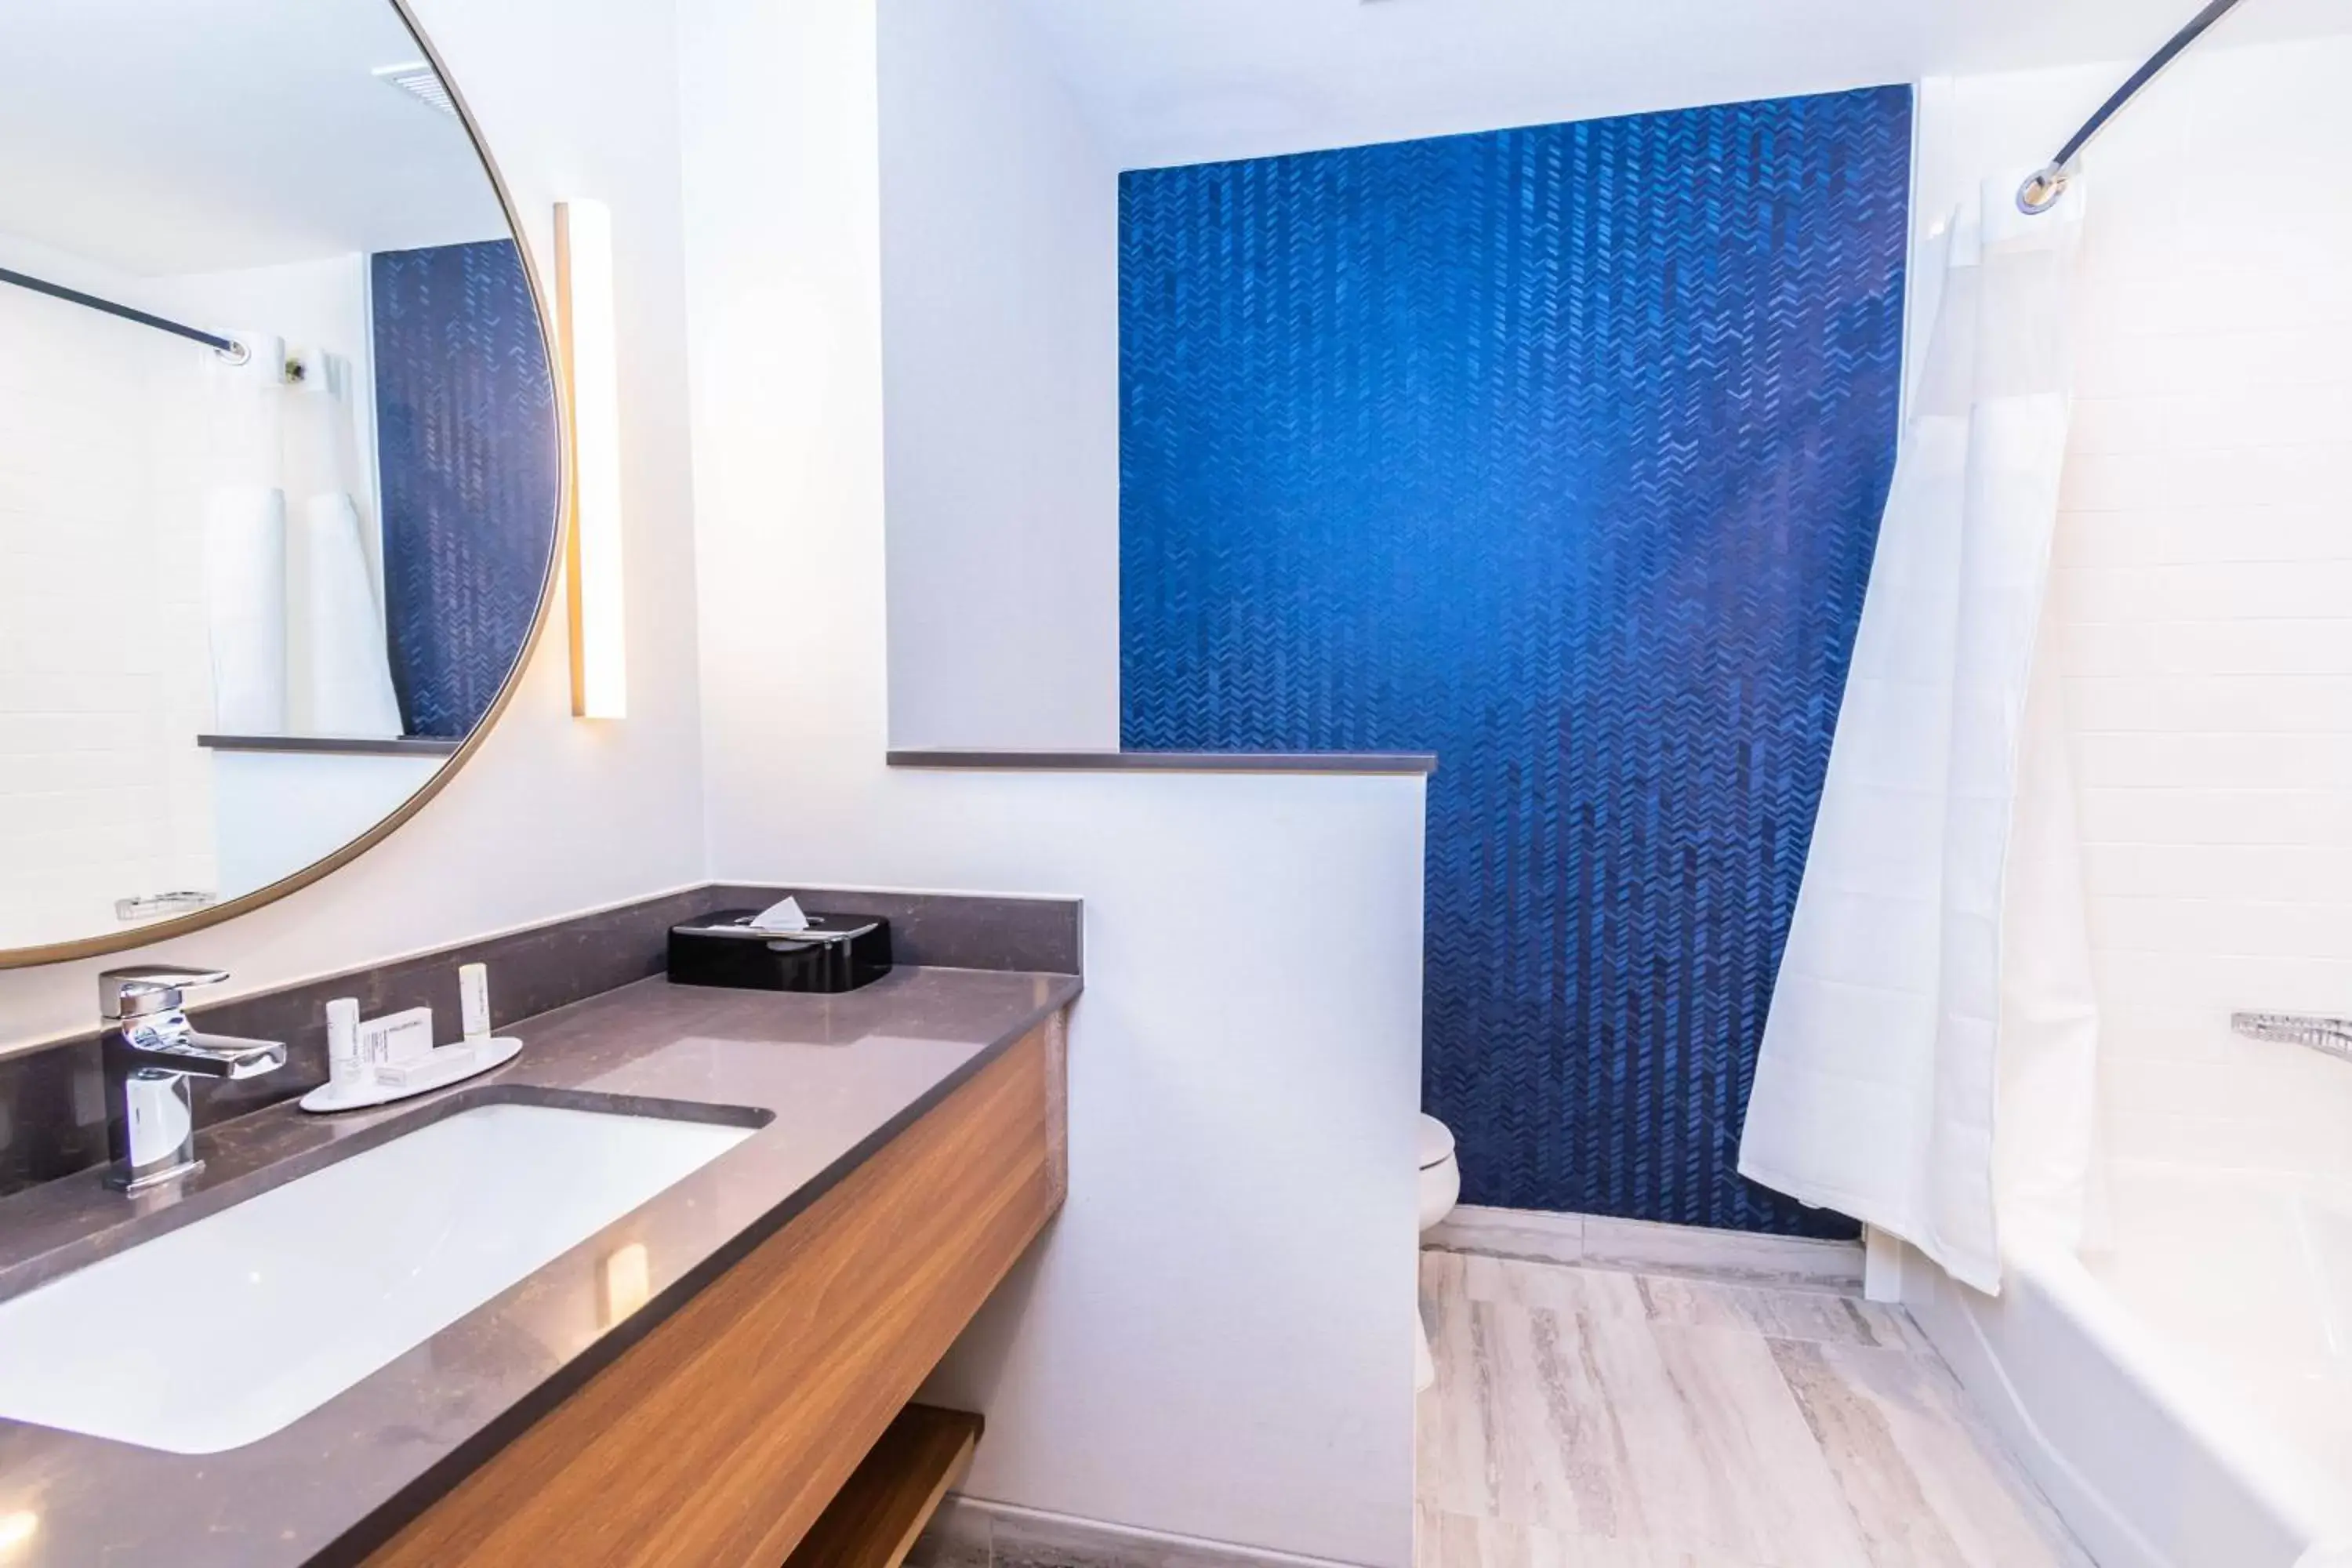 Bathroom in Fairfield Inn & Suites by Marriott Houston League City